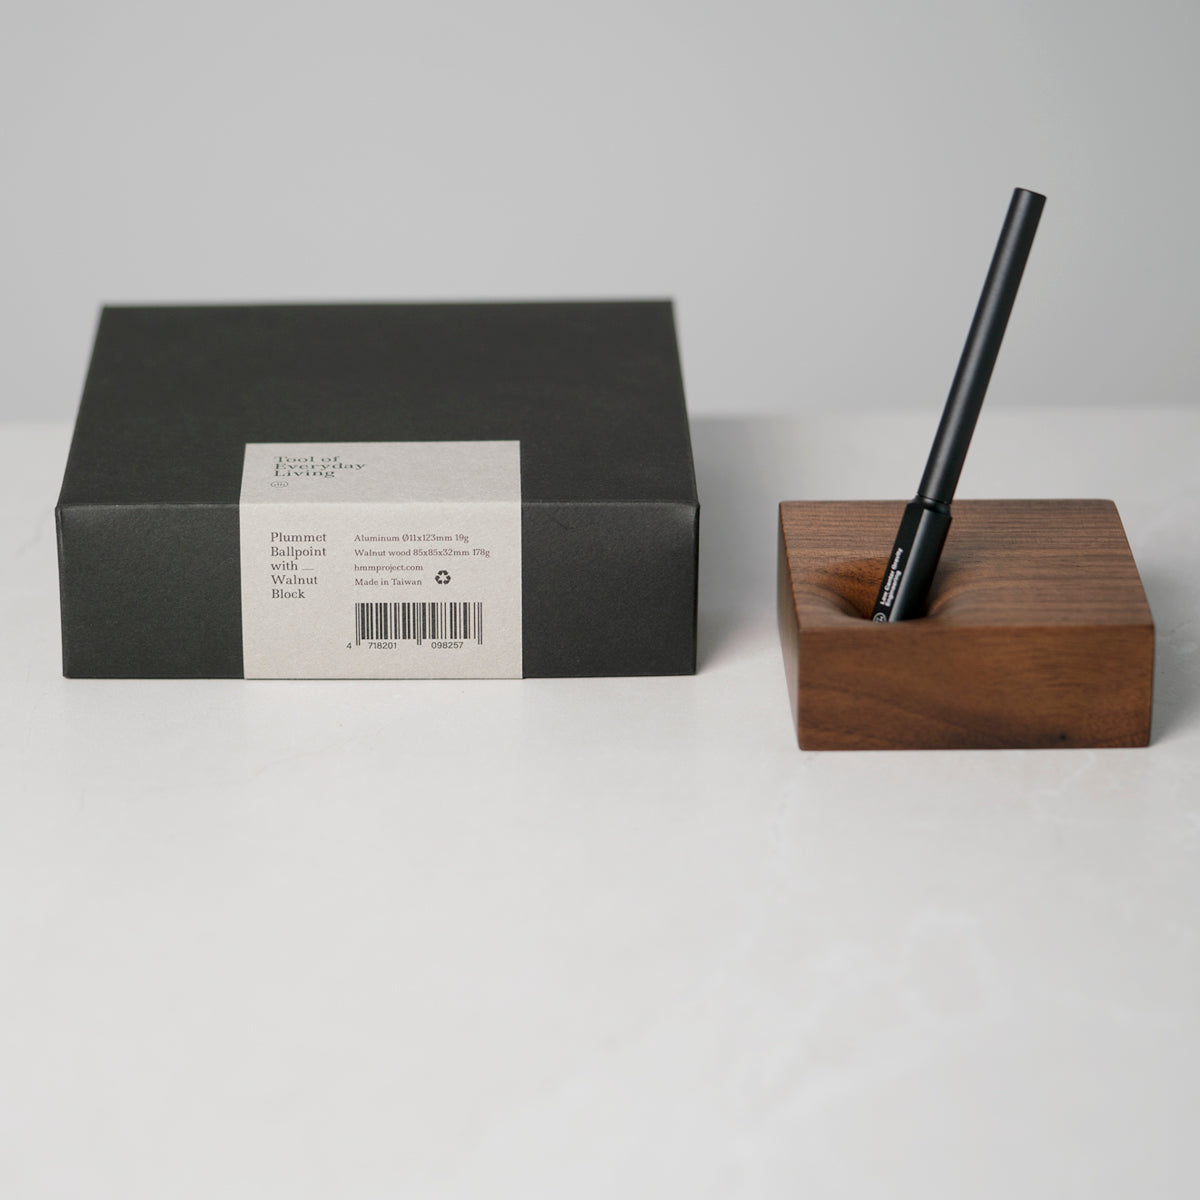 ballpoint pen, plummet pen, walnut block, wooden pen holder, giftpack